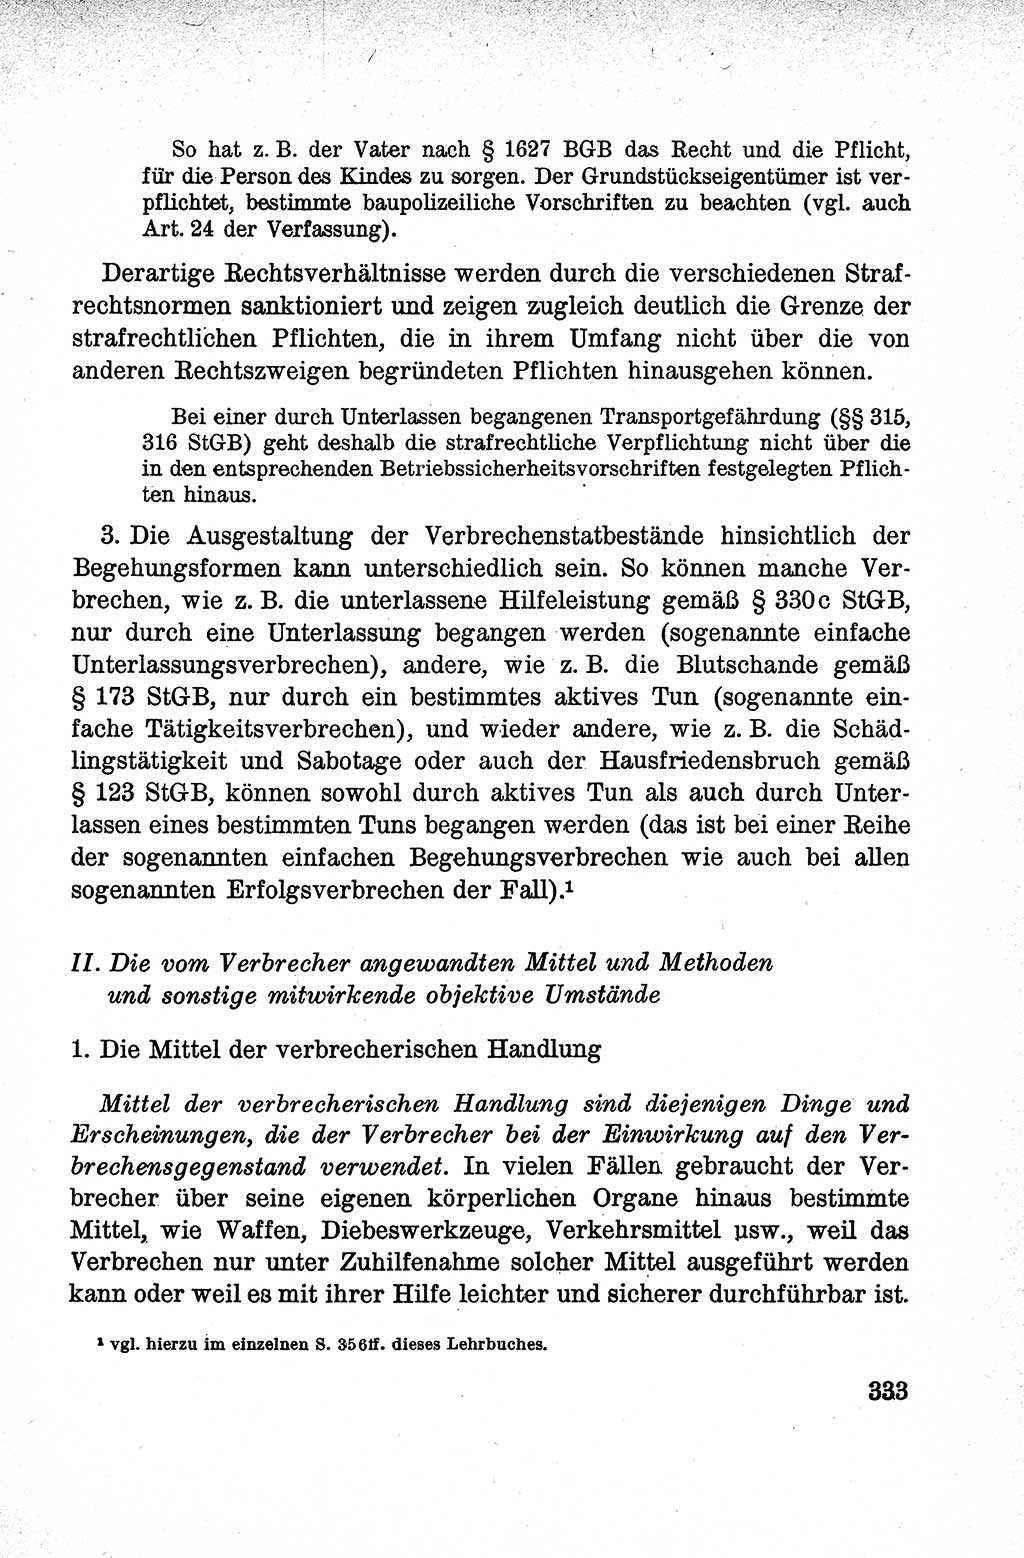 Lehrbuch des Strafrechts der Deutschen Demokratischen Republik (DDR), Allgemeiner Teil 1959, Seite 333 (Lb. Strafr. DDR AT 1959, S. 333)